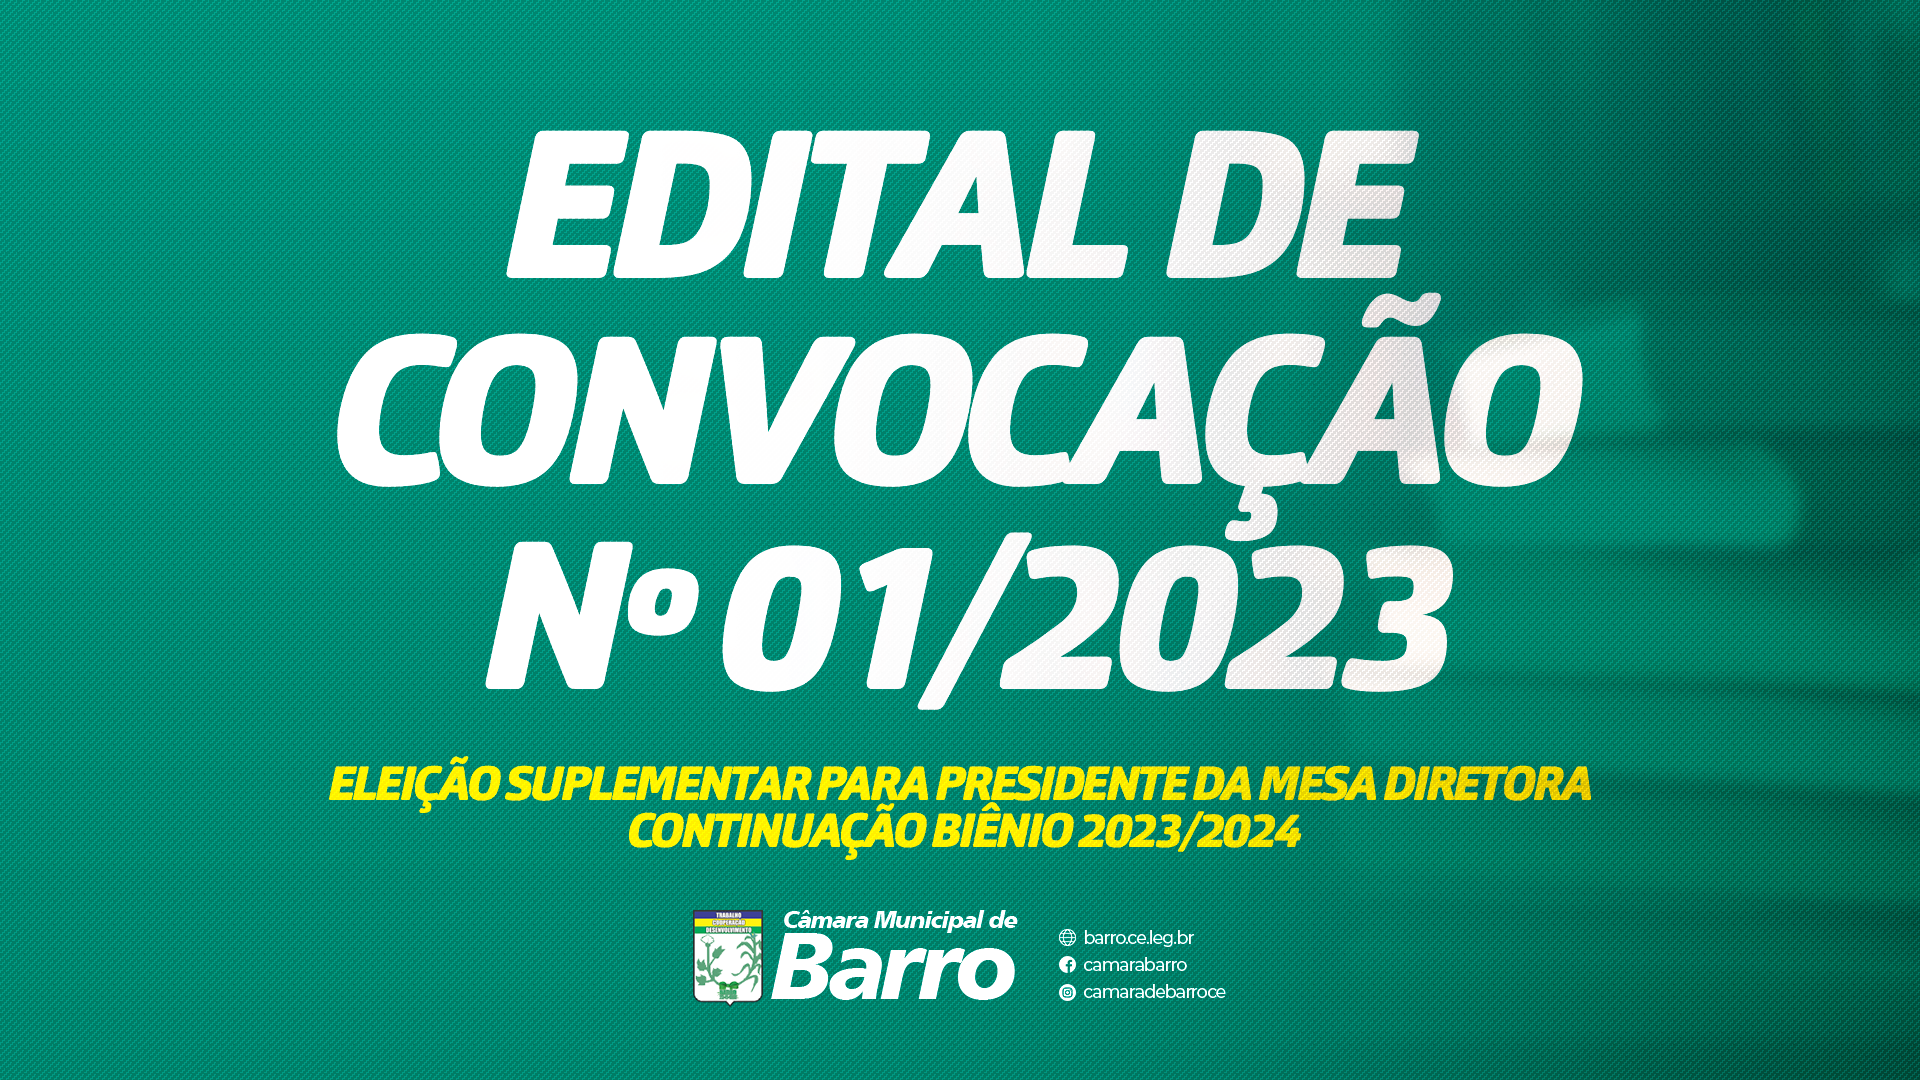 EDITAL ELEIÇÃO SUPLEMENTAR PARA PRESIDENTE DA MESA DIRETORA  CONTINUAÇÃO BIÊNIO 2023/2024